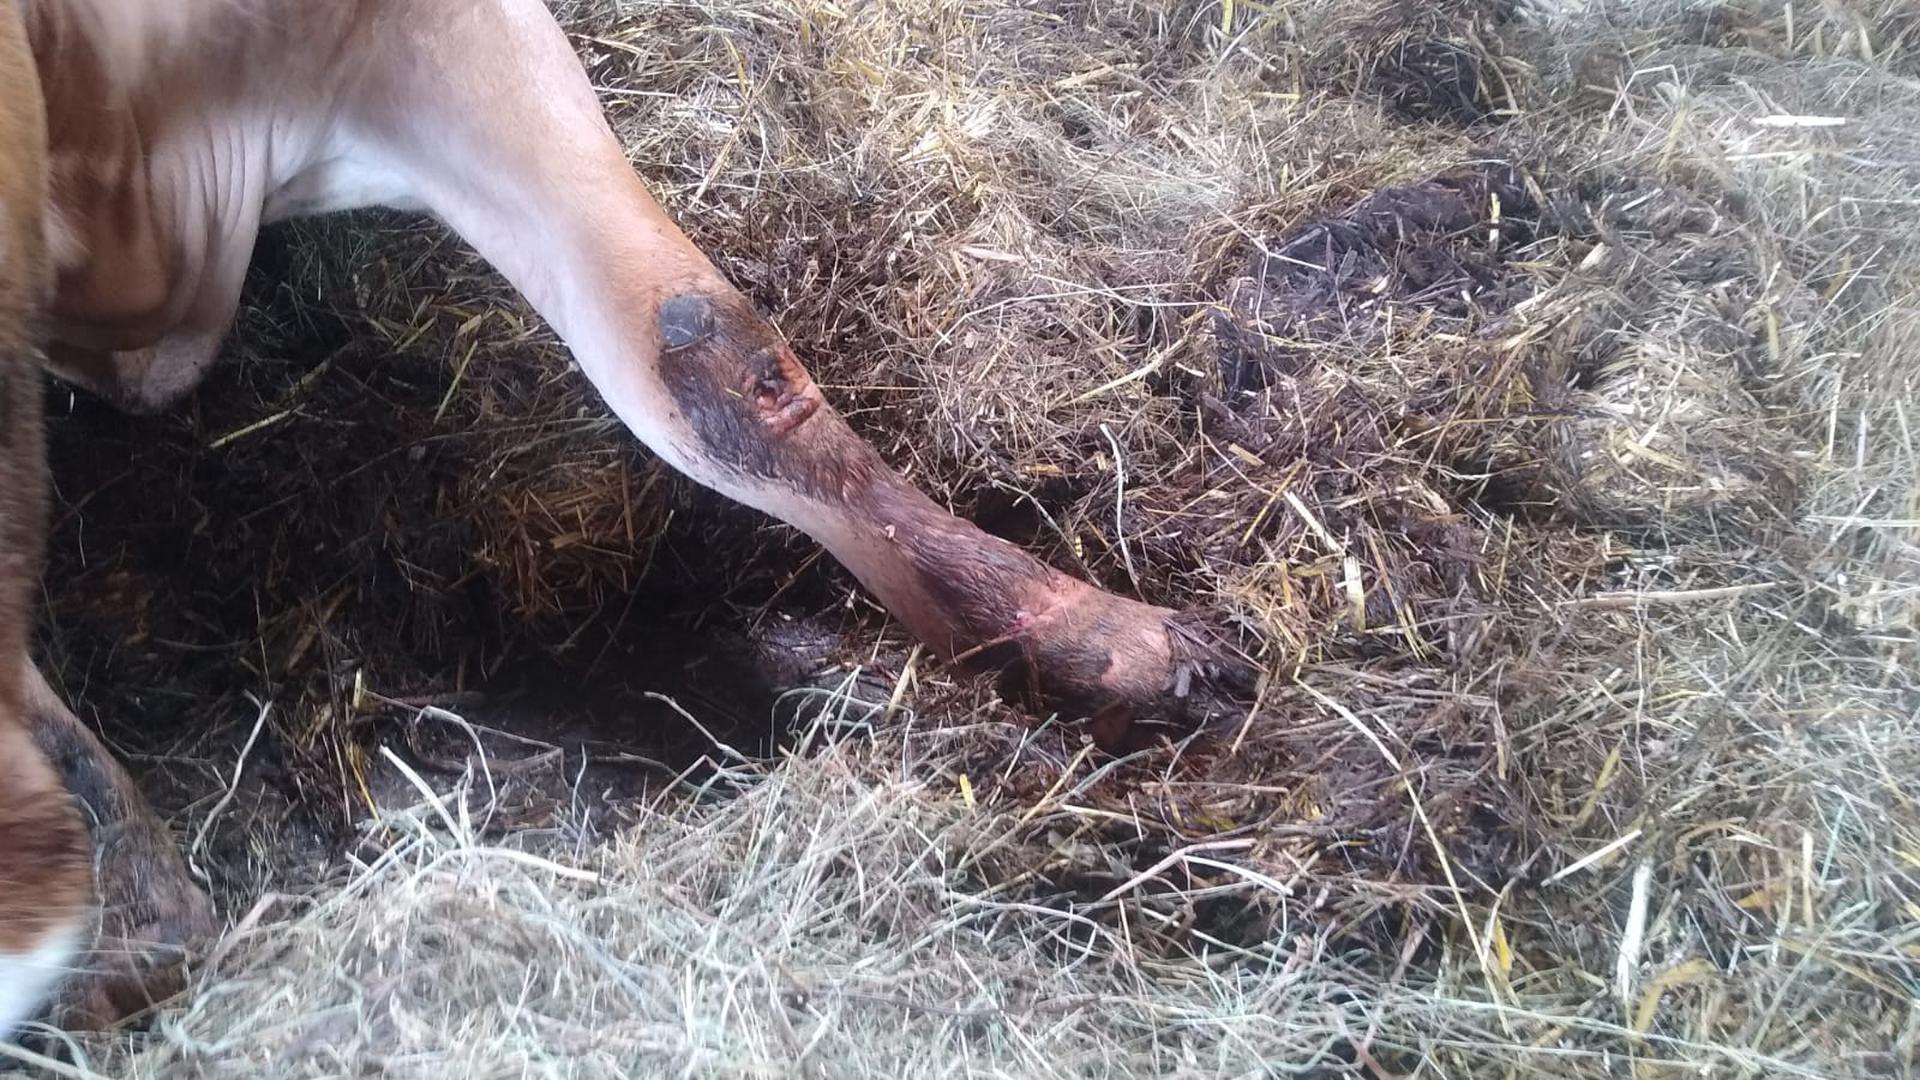 Zu schwach um aufzustehen: Eine verletzte Kuh liegt mit einer Wunde am Bein auf einem Mastbetrieb in Straubenhardt in ihren Ausscheidungen. Später wurde sie eingeschläfert.